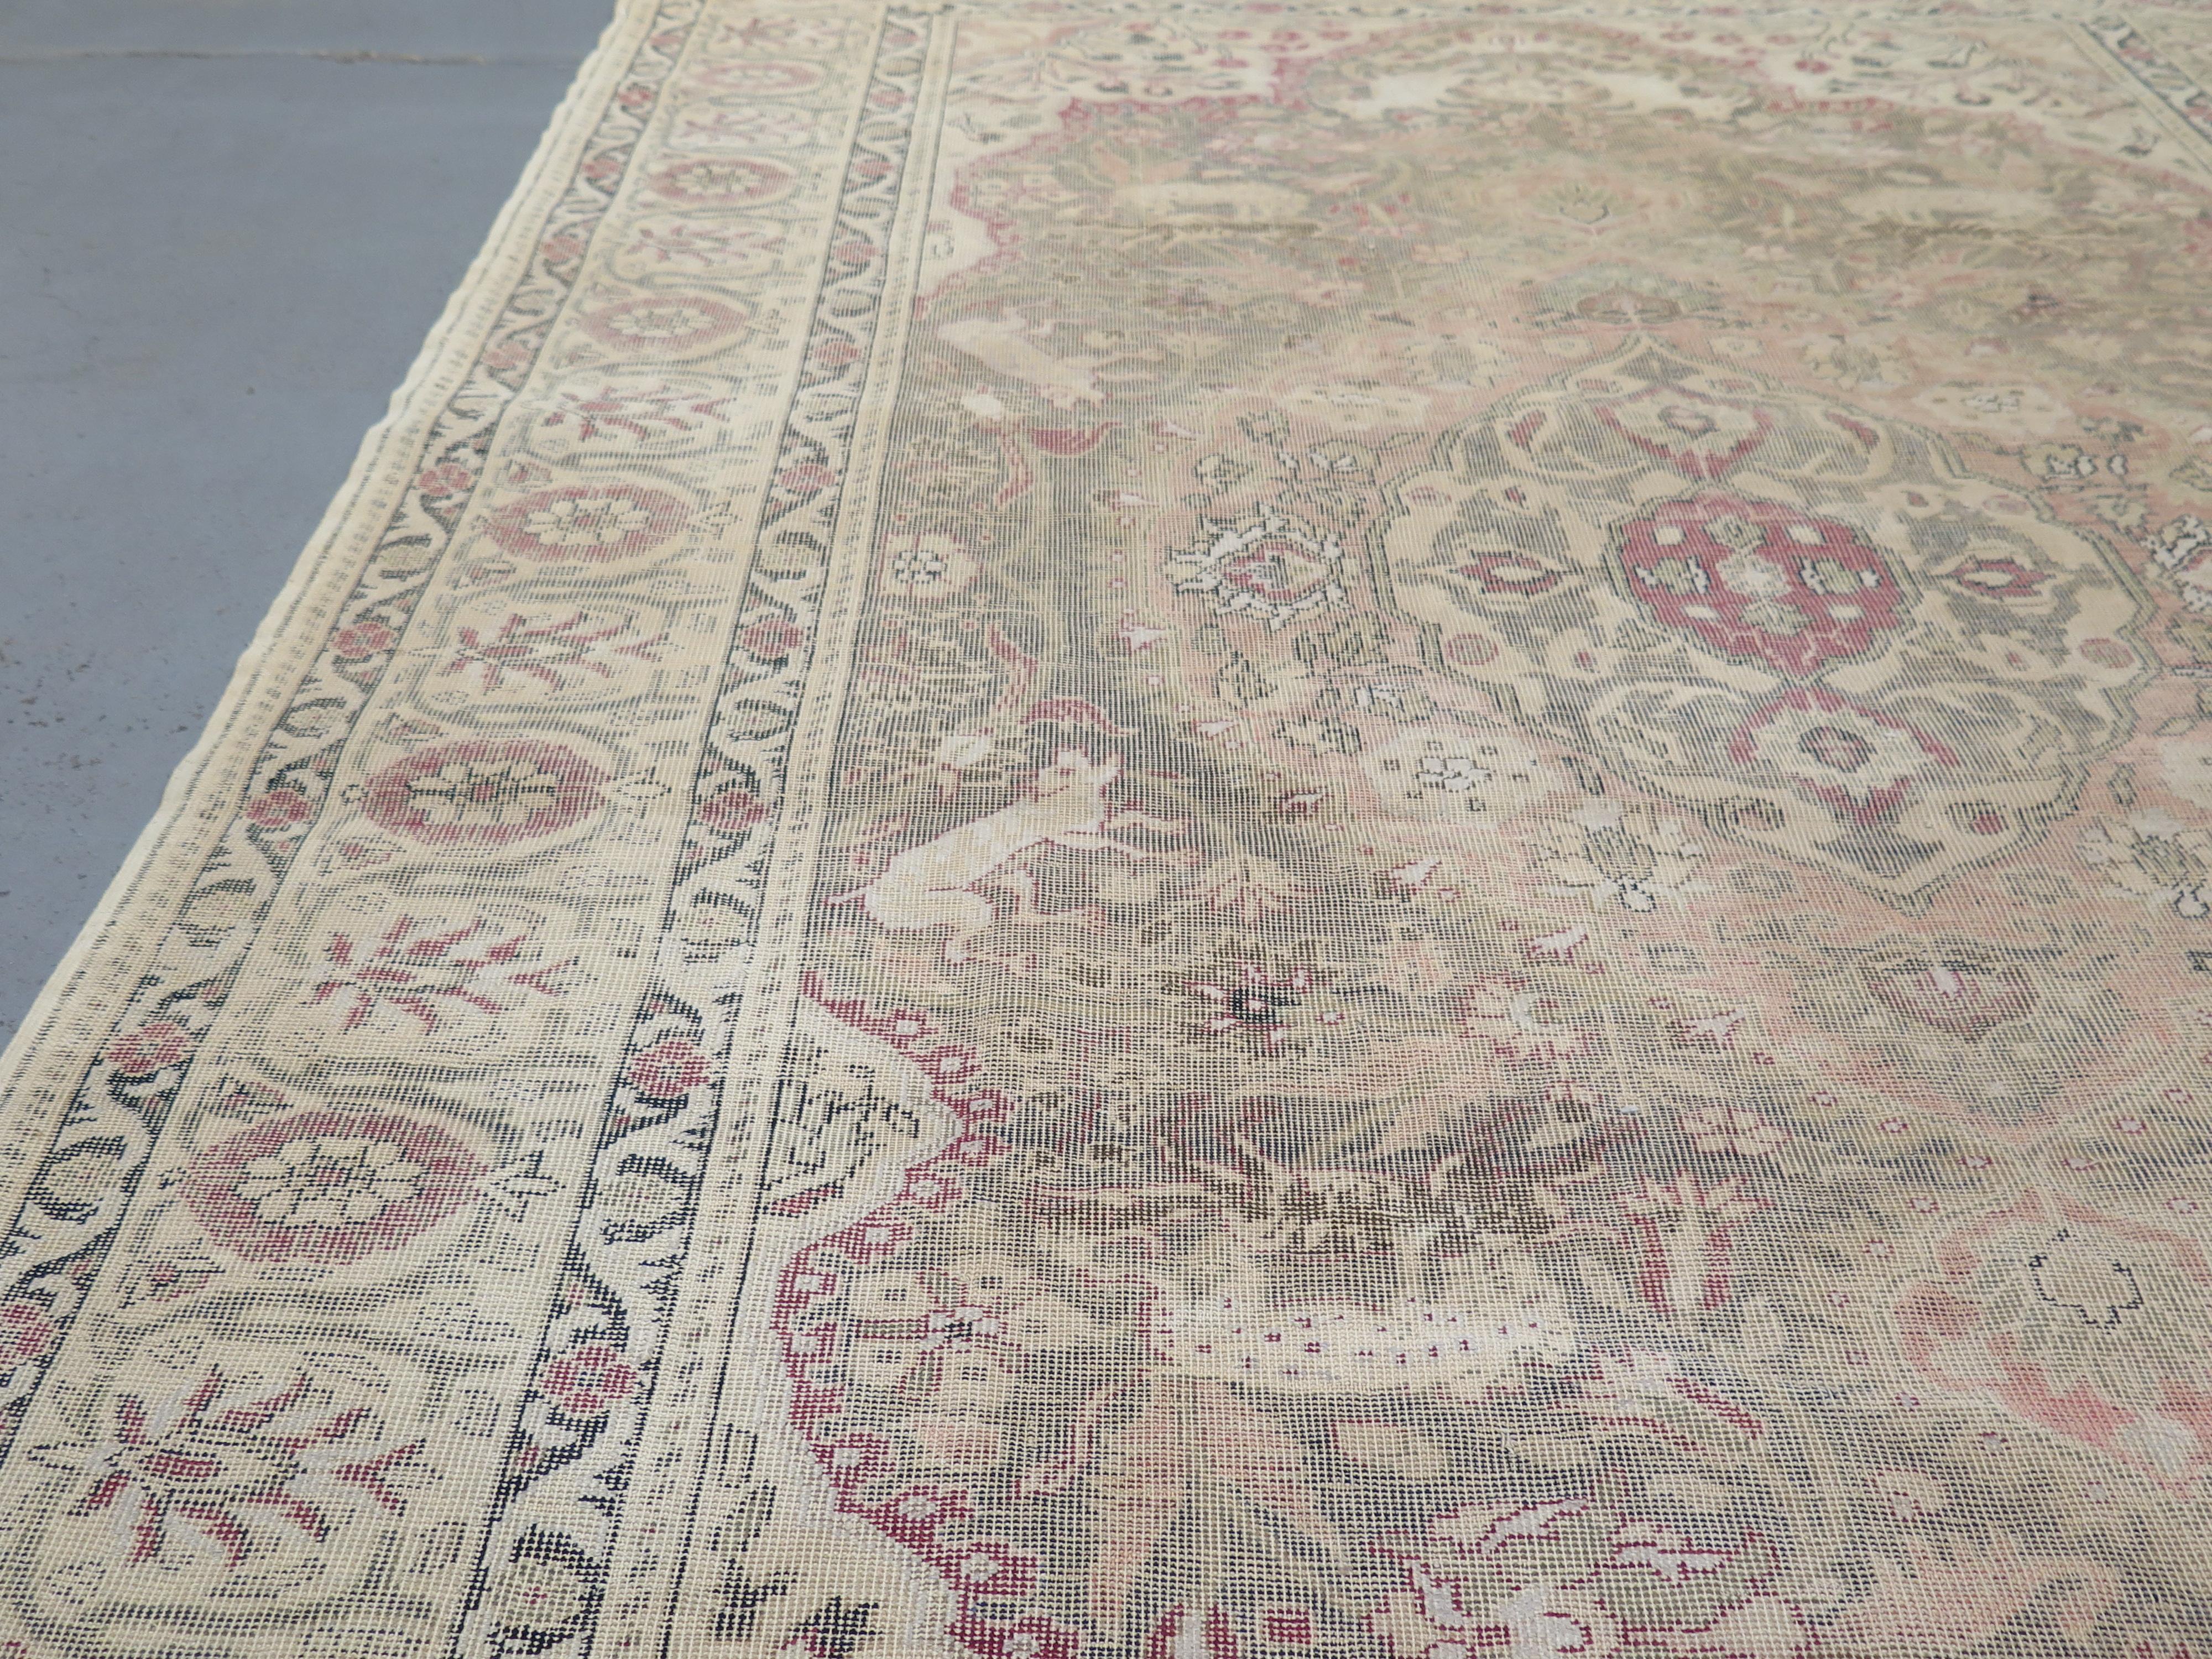 L'Anatolie, la région occidentale de la Turquie d'où proviennent les tapis de Sivas, possède une longue tradition de tissage de tapis, qui remonte au moins au XIIIe siècle. Comme l'a écrit l'explorateur Marco Polo, 